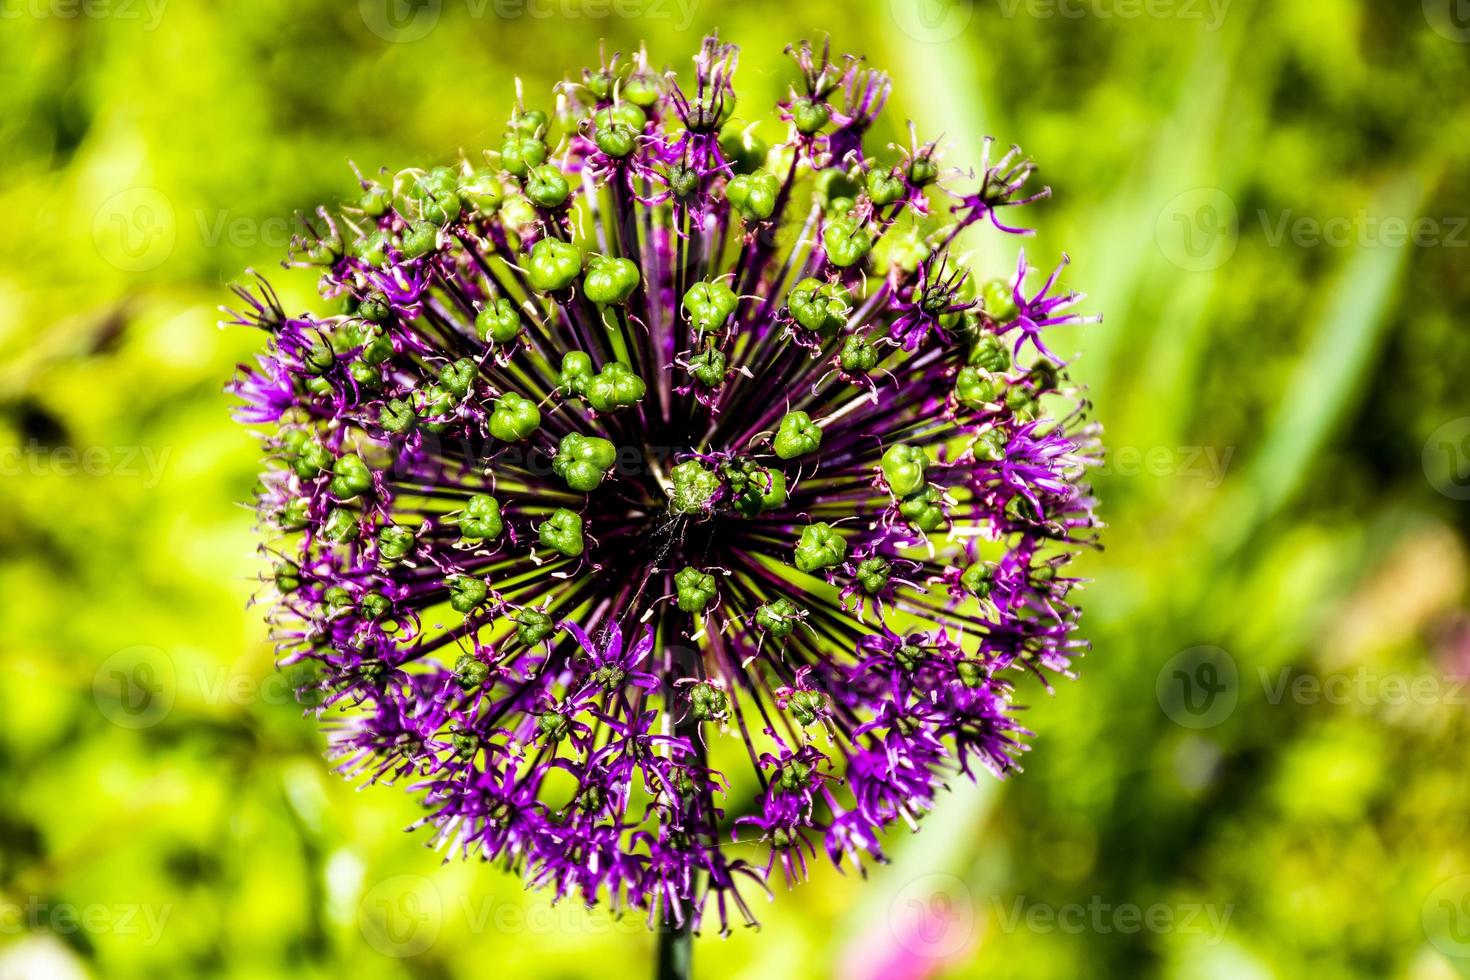 Allium flower close-up photo